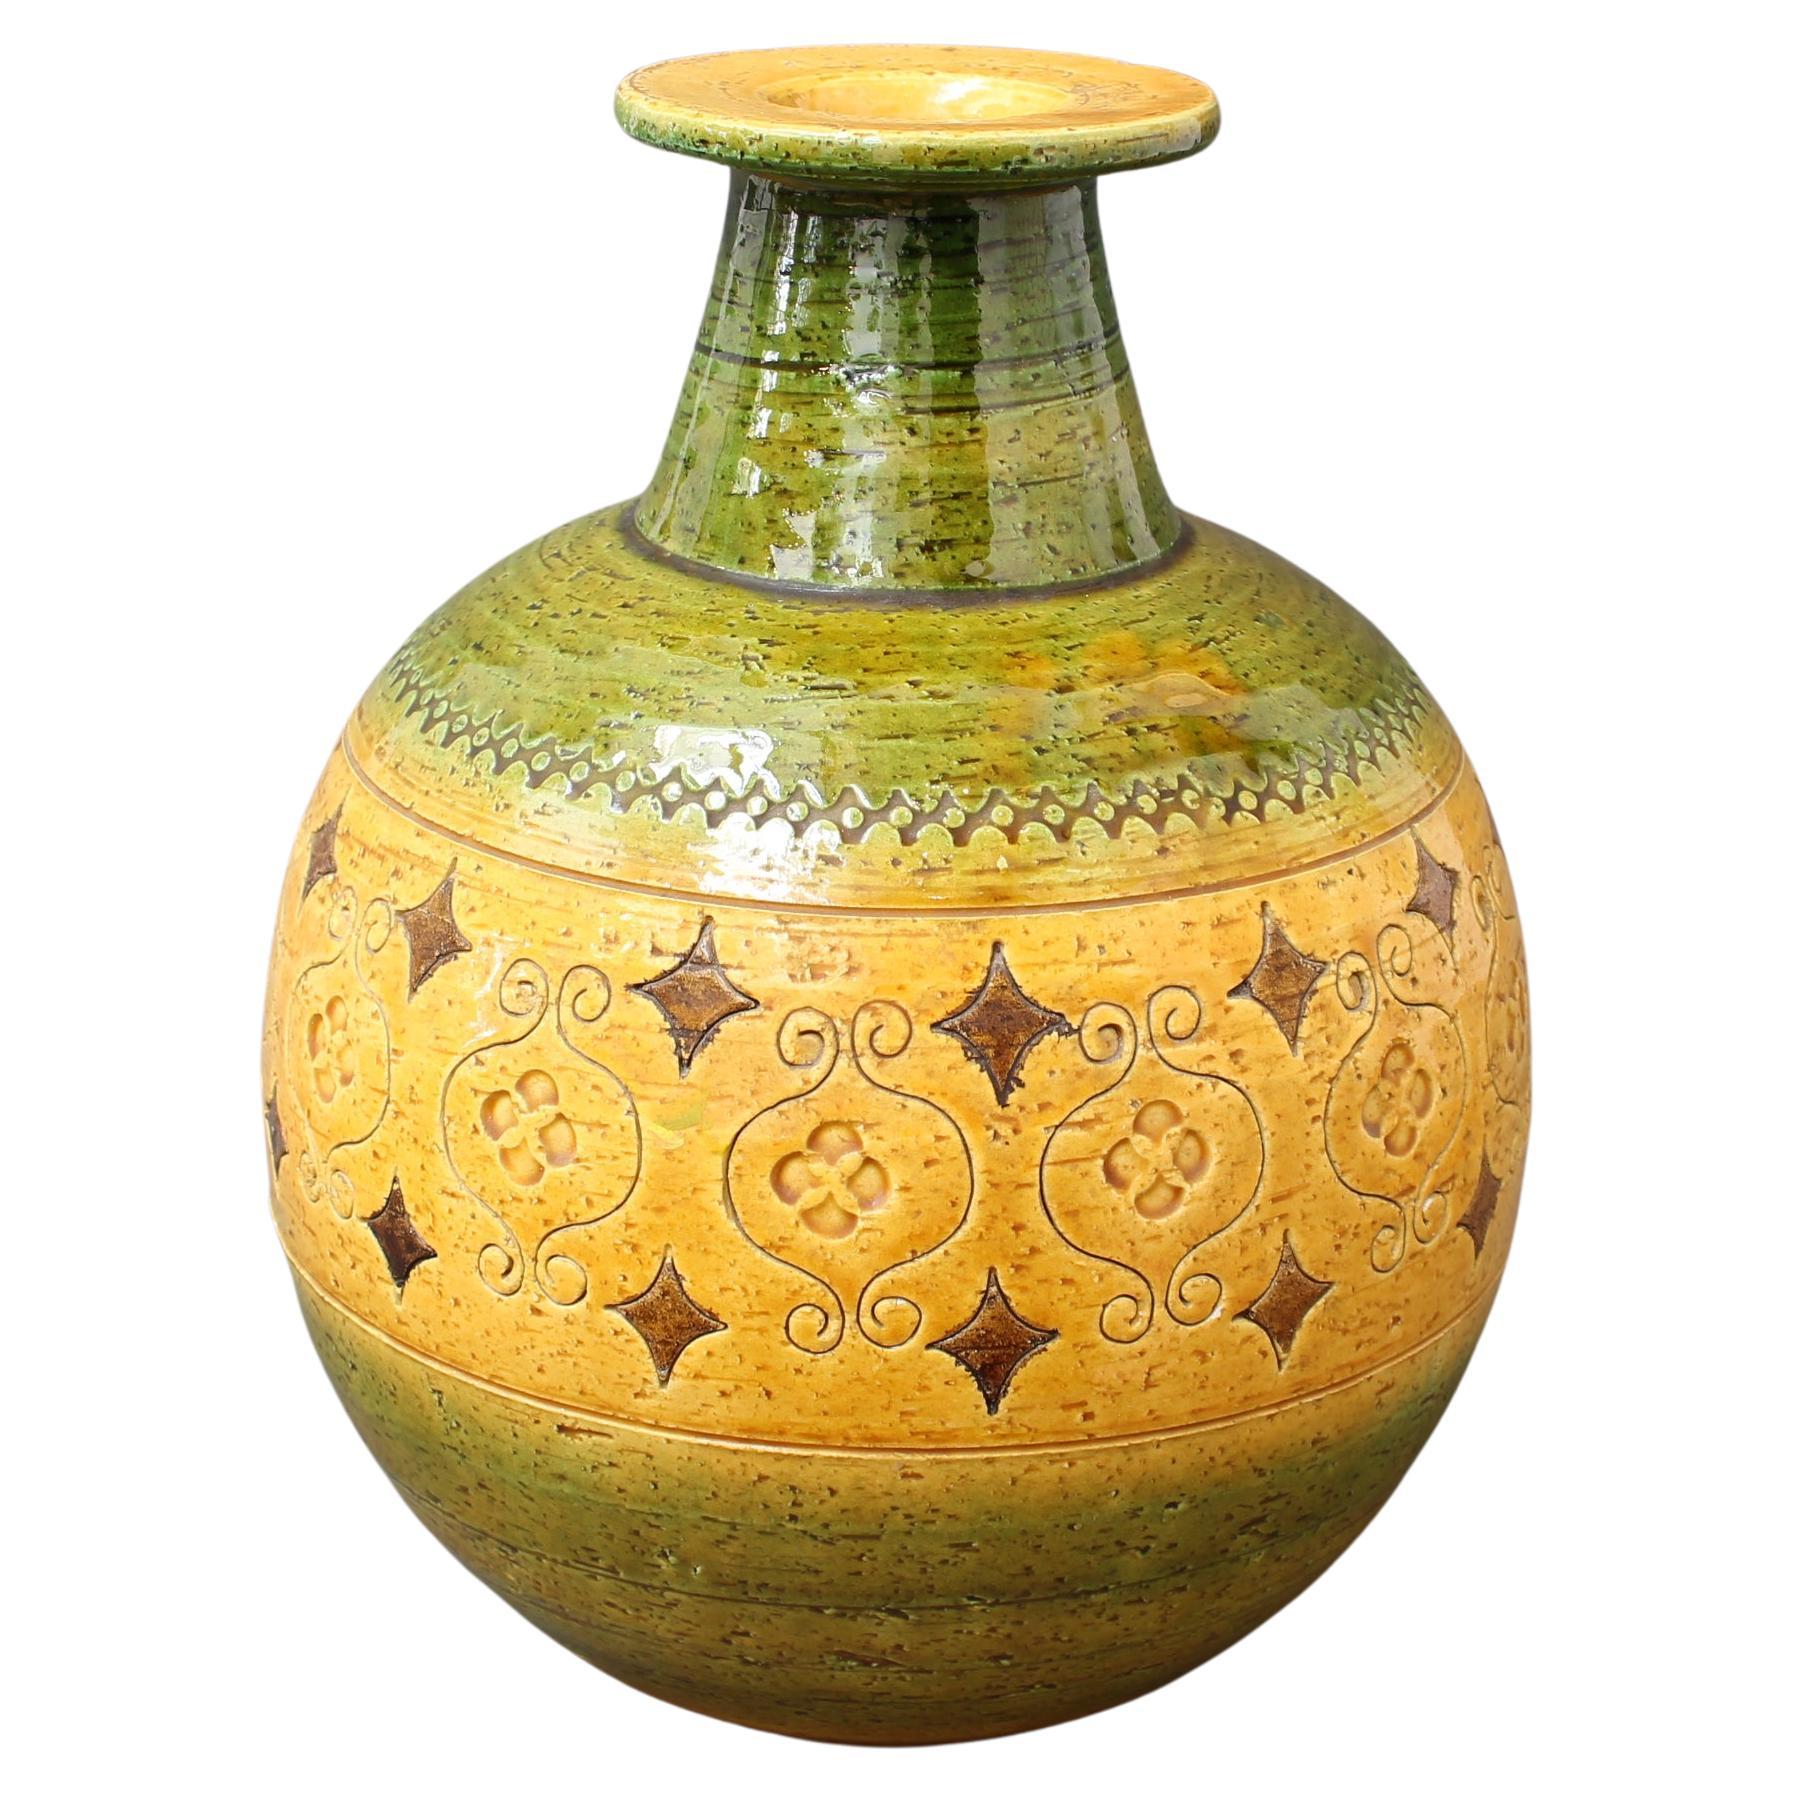 Mid-Century Italian Ceramic Vase by Aldo Londi for Bitossi - 'Arabesque' 